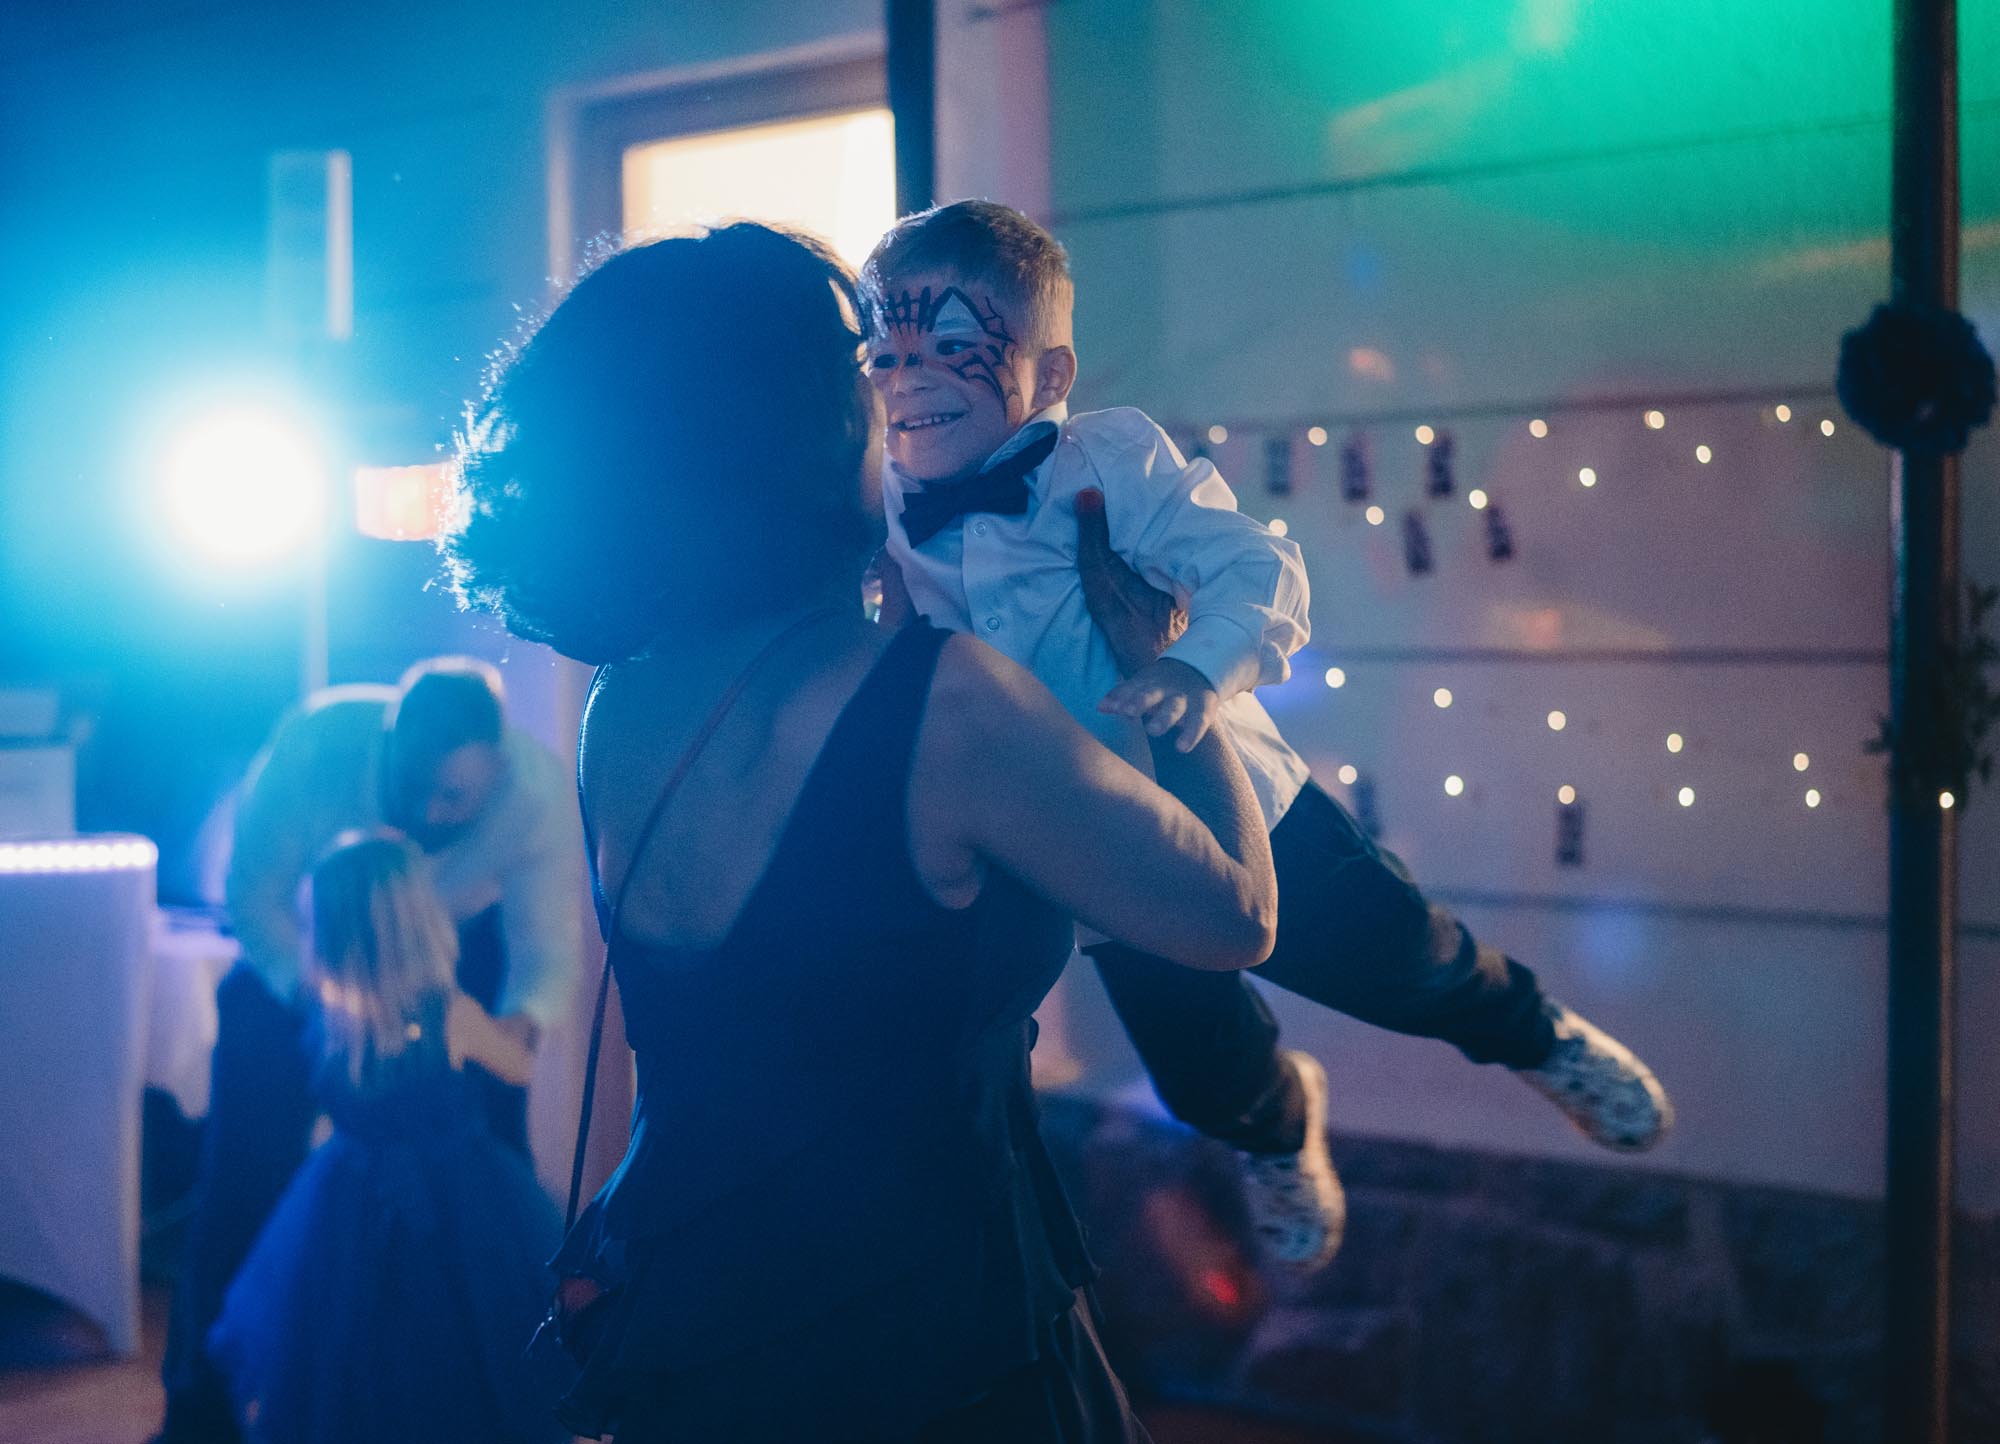 Hochzeitsfotos_Hochzeitsreportage in Wien_Feier_Oma tanzt mit Enkel schwingend durch die Luft